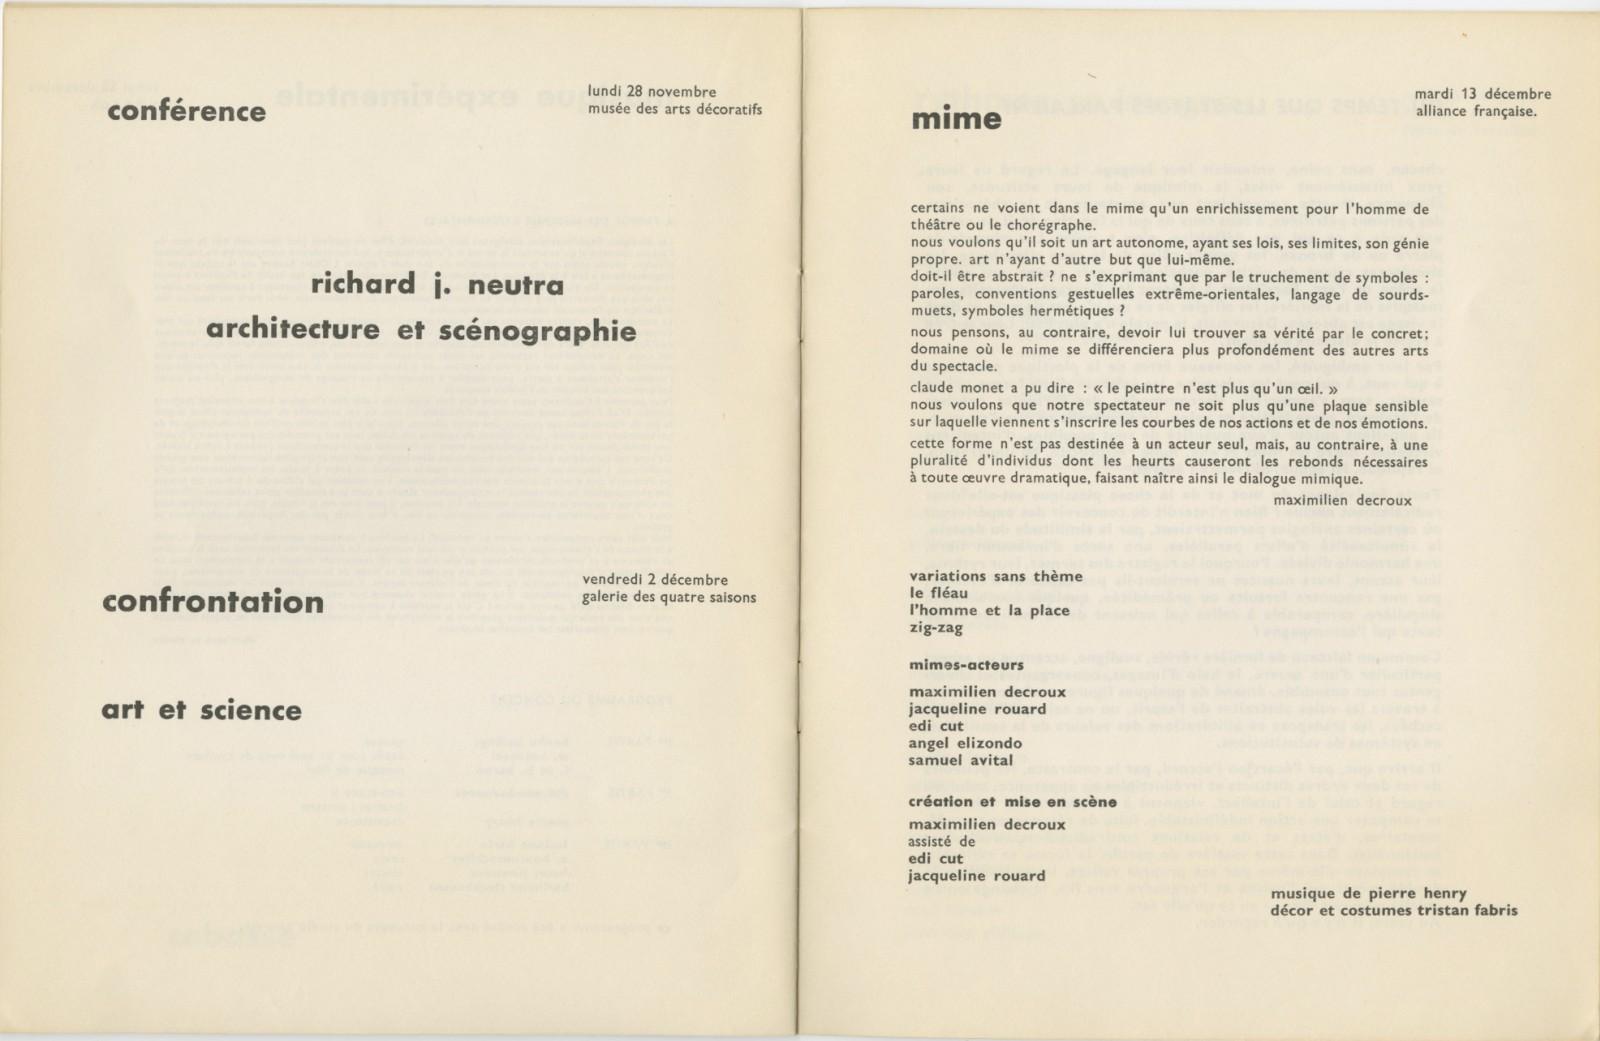 Catalogue of the "Festival d'art d'avant-garde", Porte de Versailles, Paris, 1960